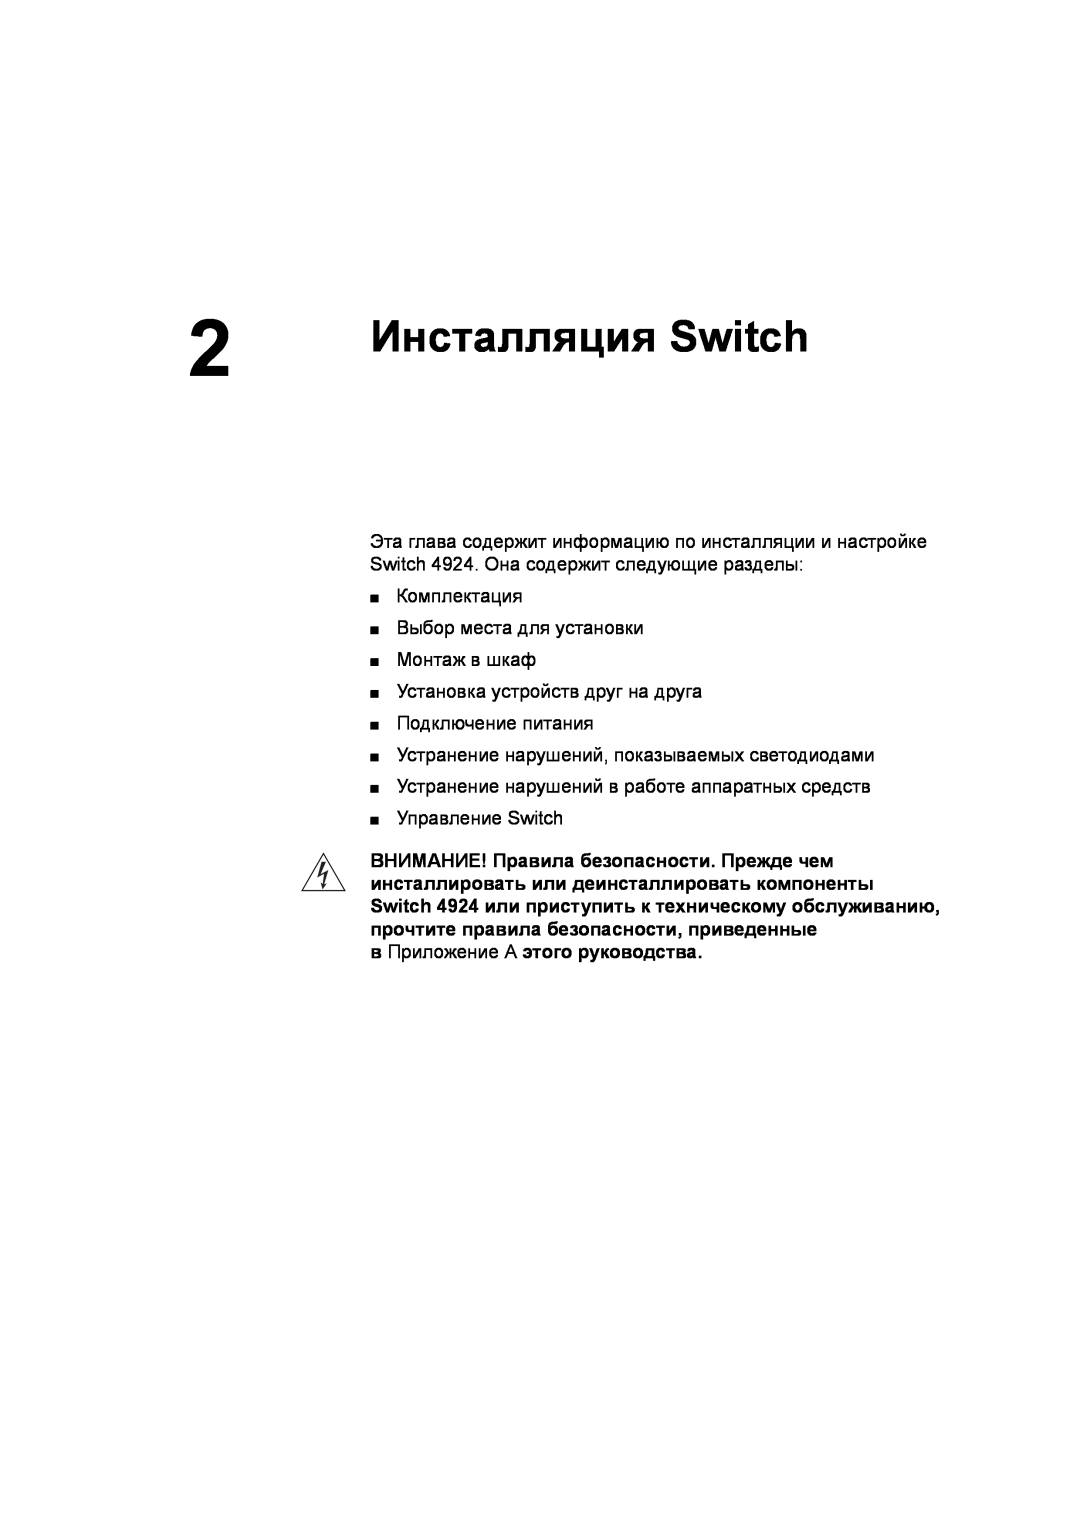 3Com 3C17701 manual Инсталляция Switch, в Приложение A этого руководства 